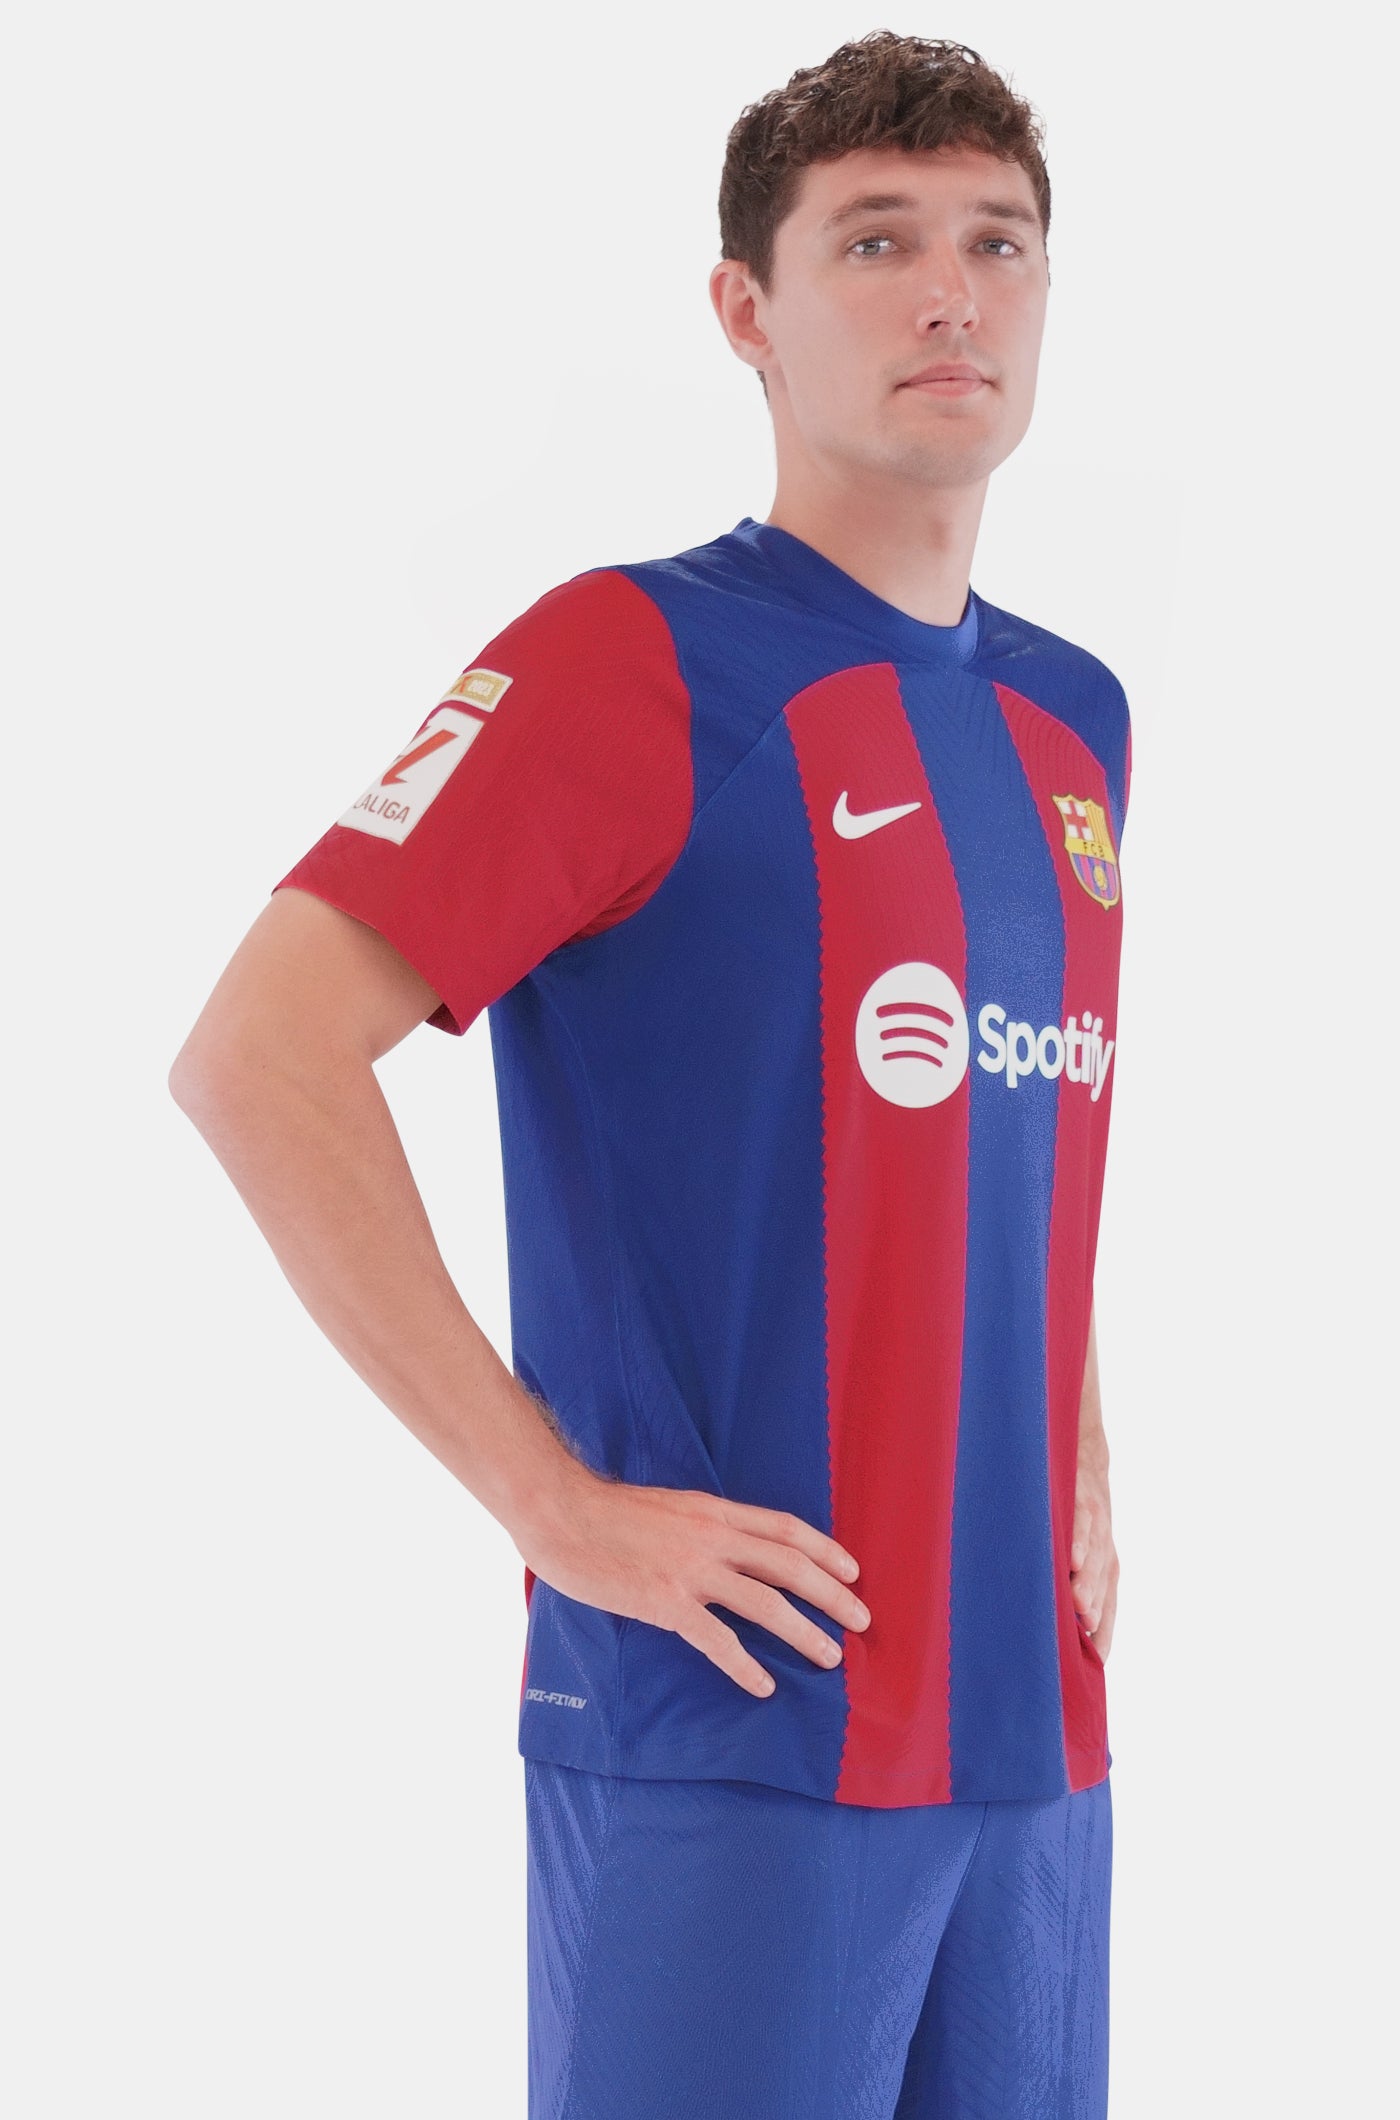 LFP FC Barcelona home shirt 23/24 Player's Edition - CHRISTENSEN